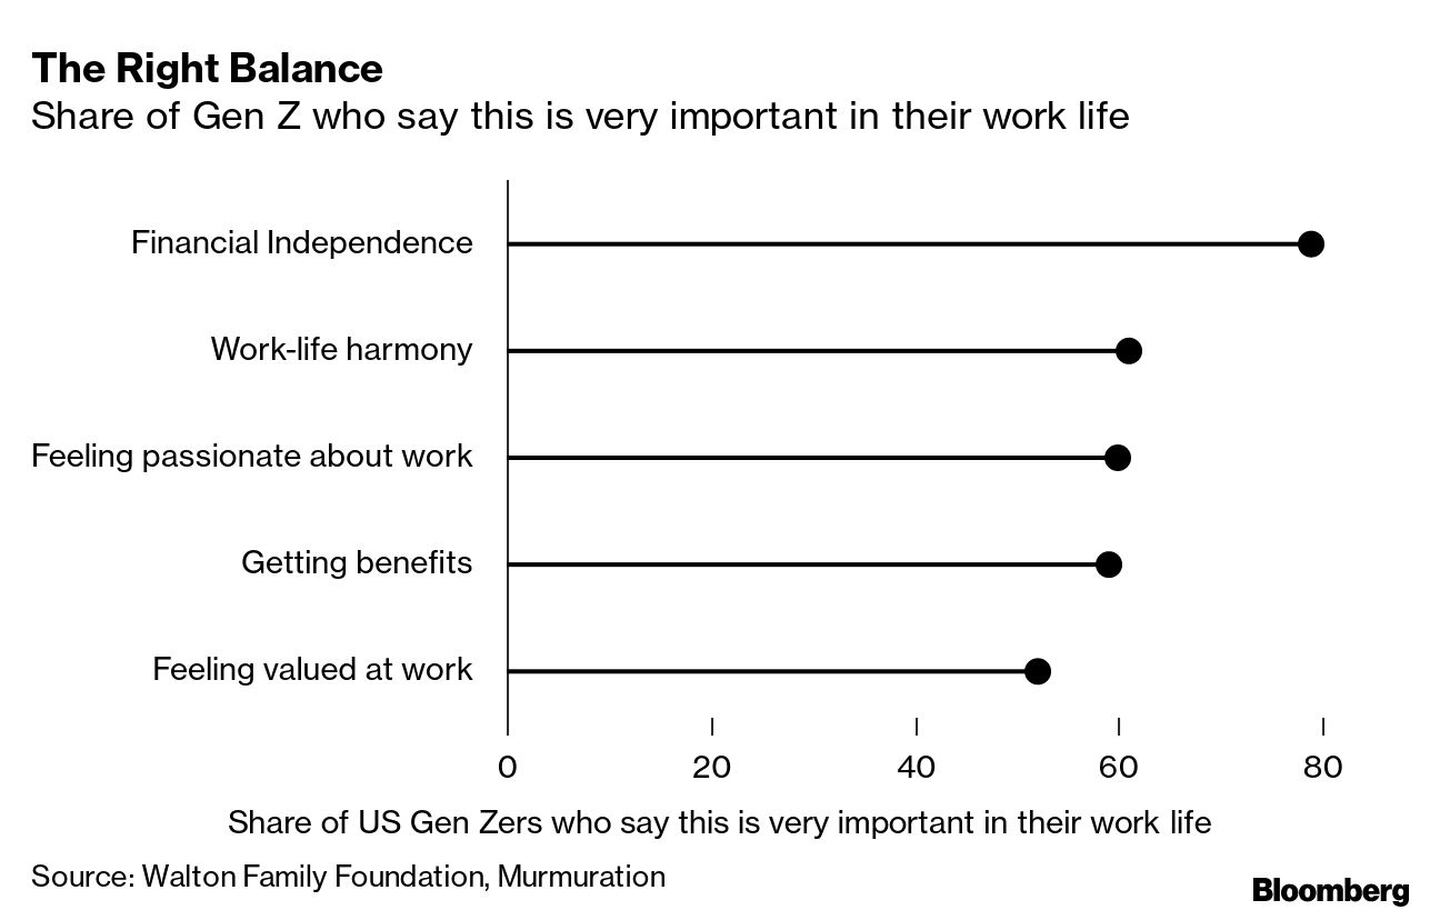  Porcentaje de la generación Z que dice que esto es muy importante en su vida laboraldfd